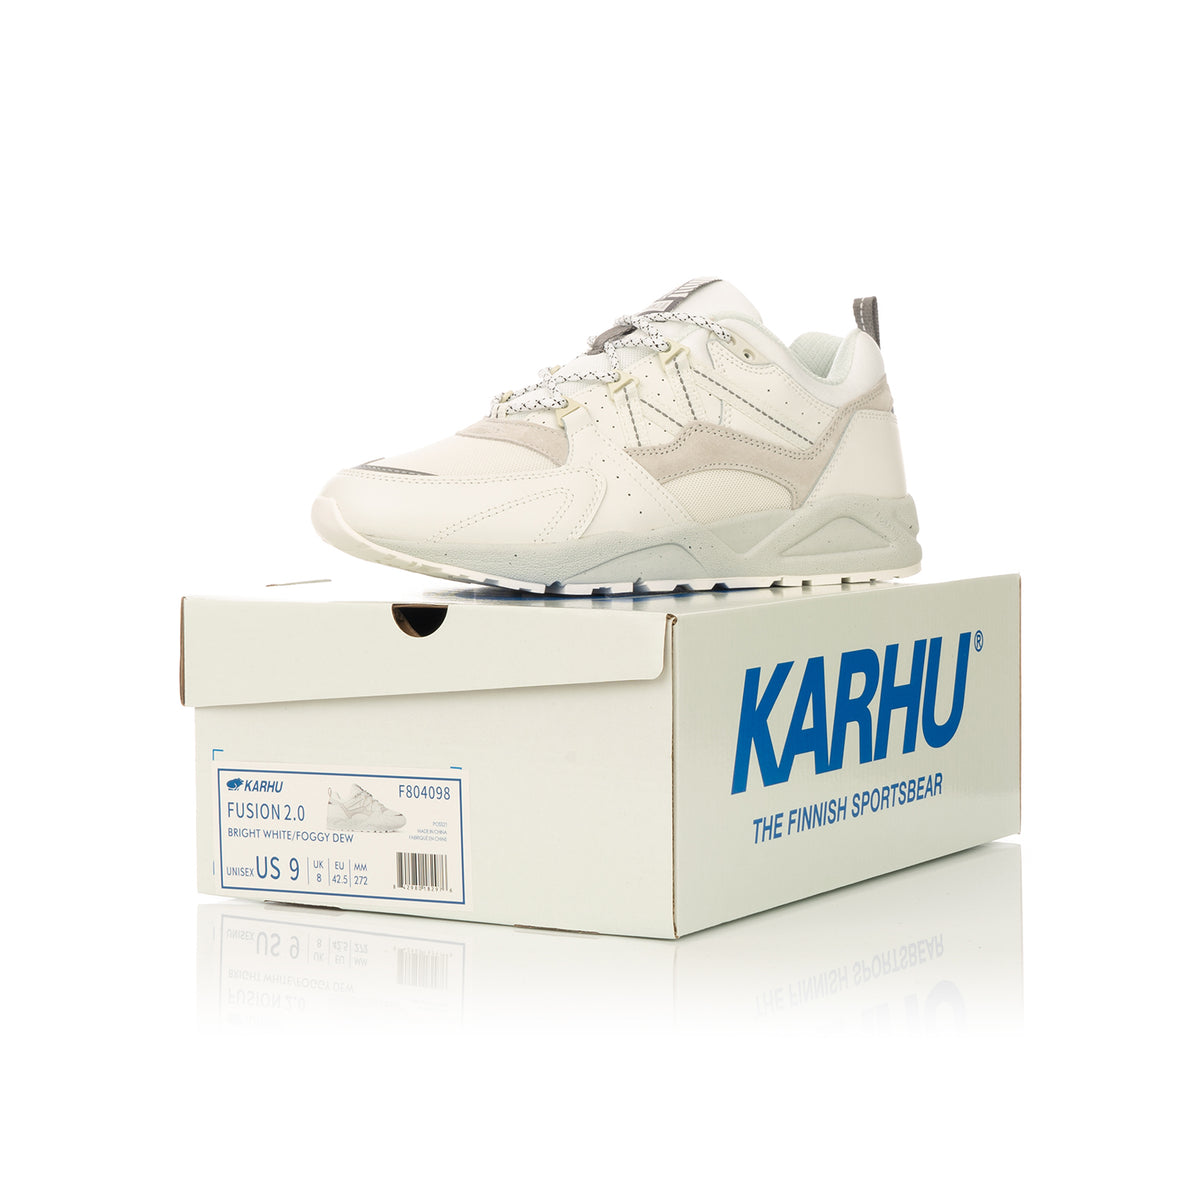 Karhu | Fusion 2.0 Bright White / Foggy Dew - Concrete